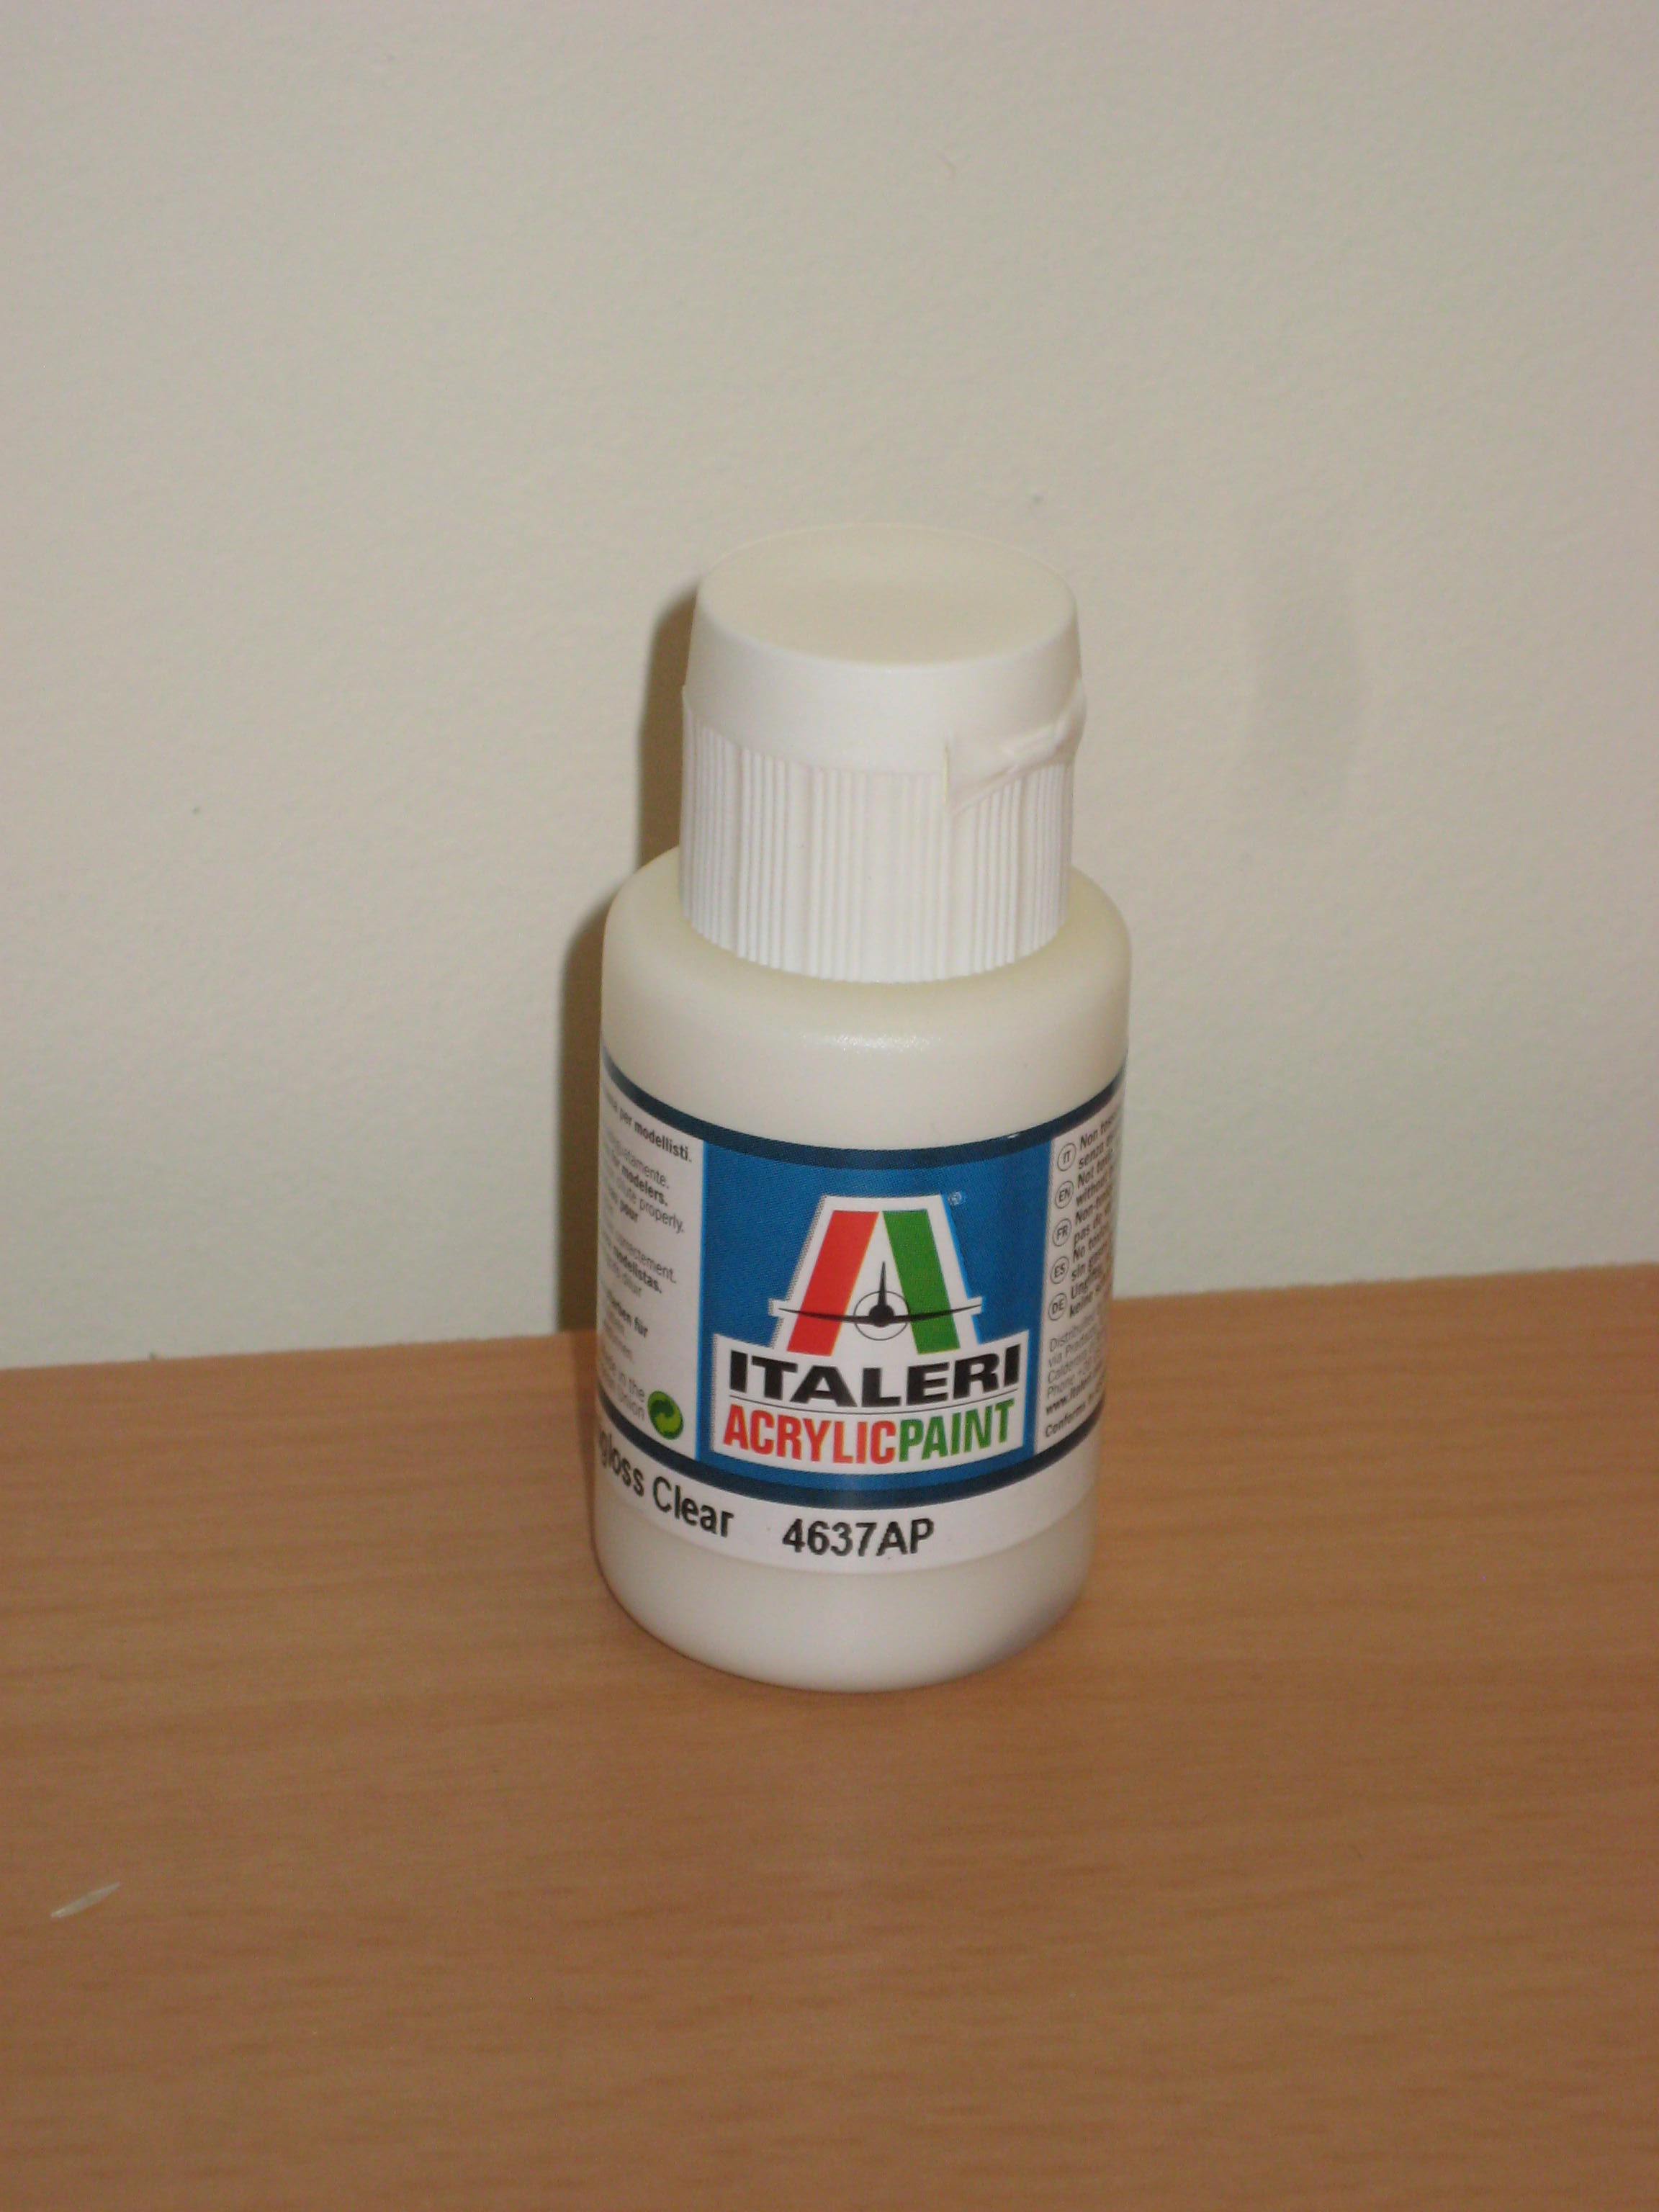 Italeri Acrylic Paint Semigloss Clear Acrylic